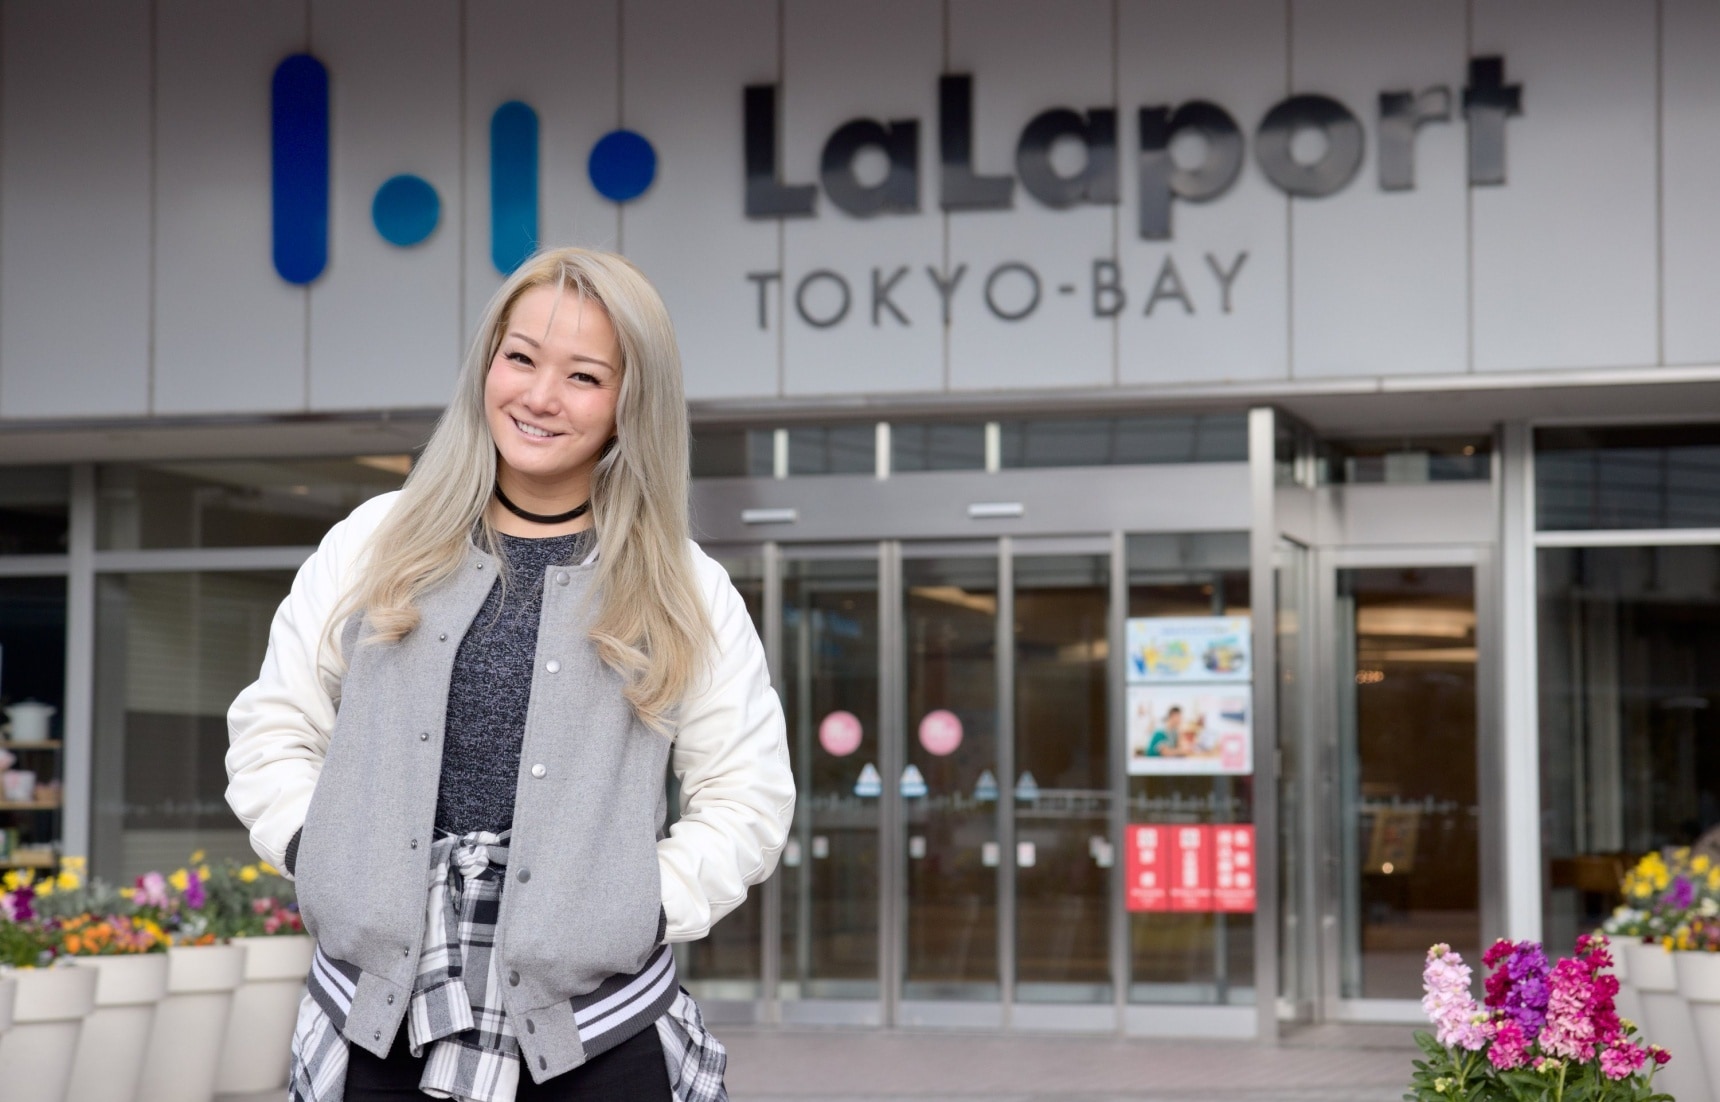 ตามรอยพิคาชูที่ห้าง LaLaport TOKYO-BAY